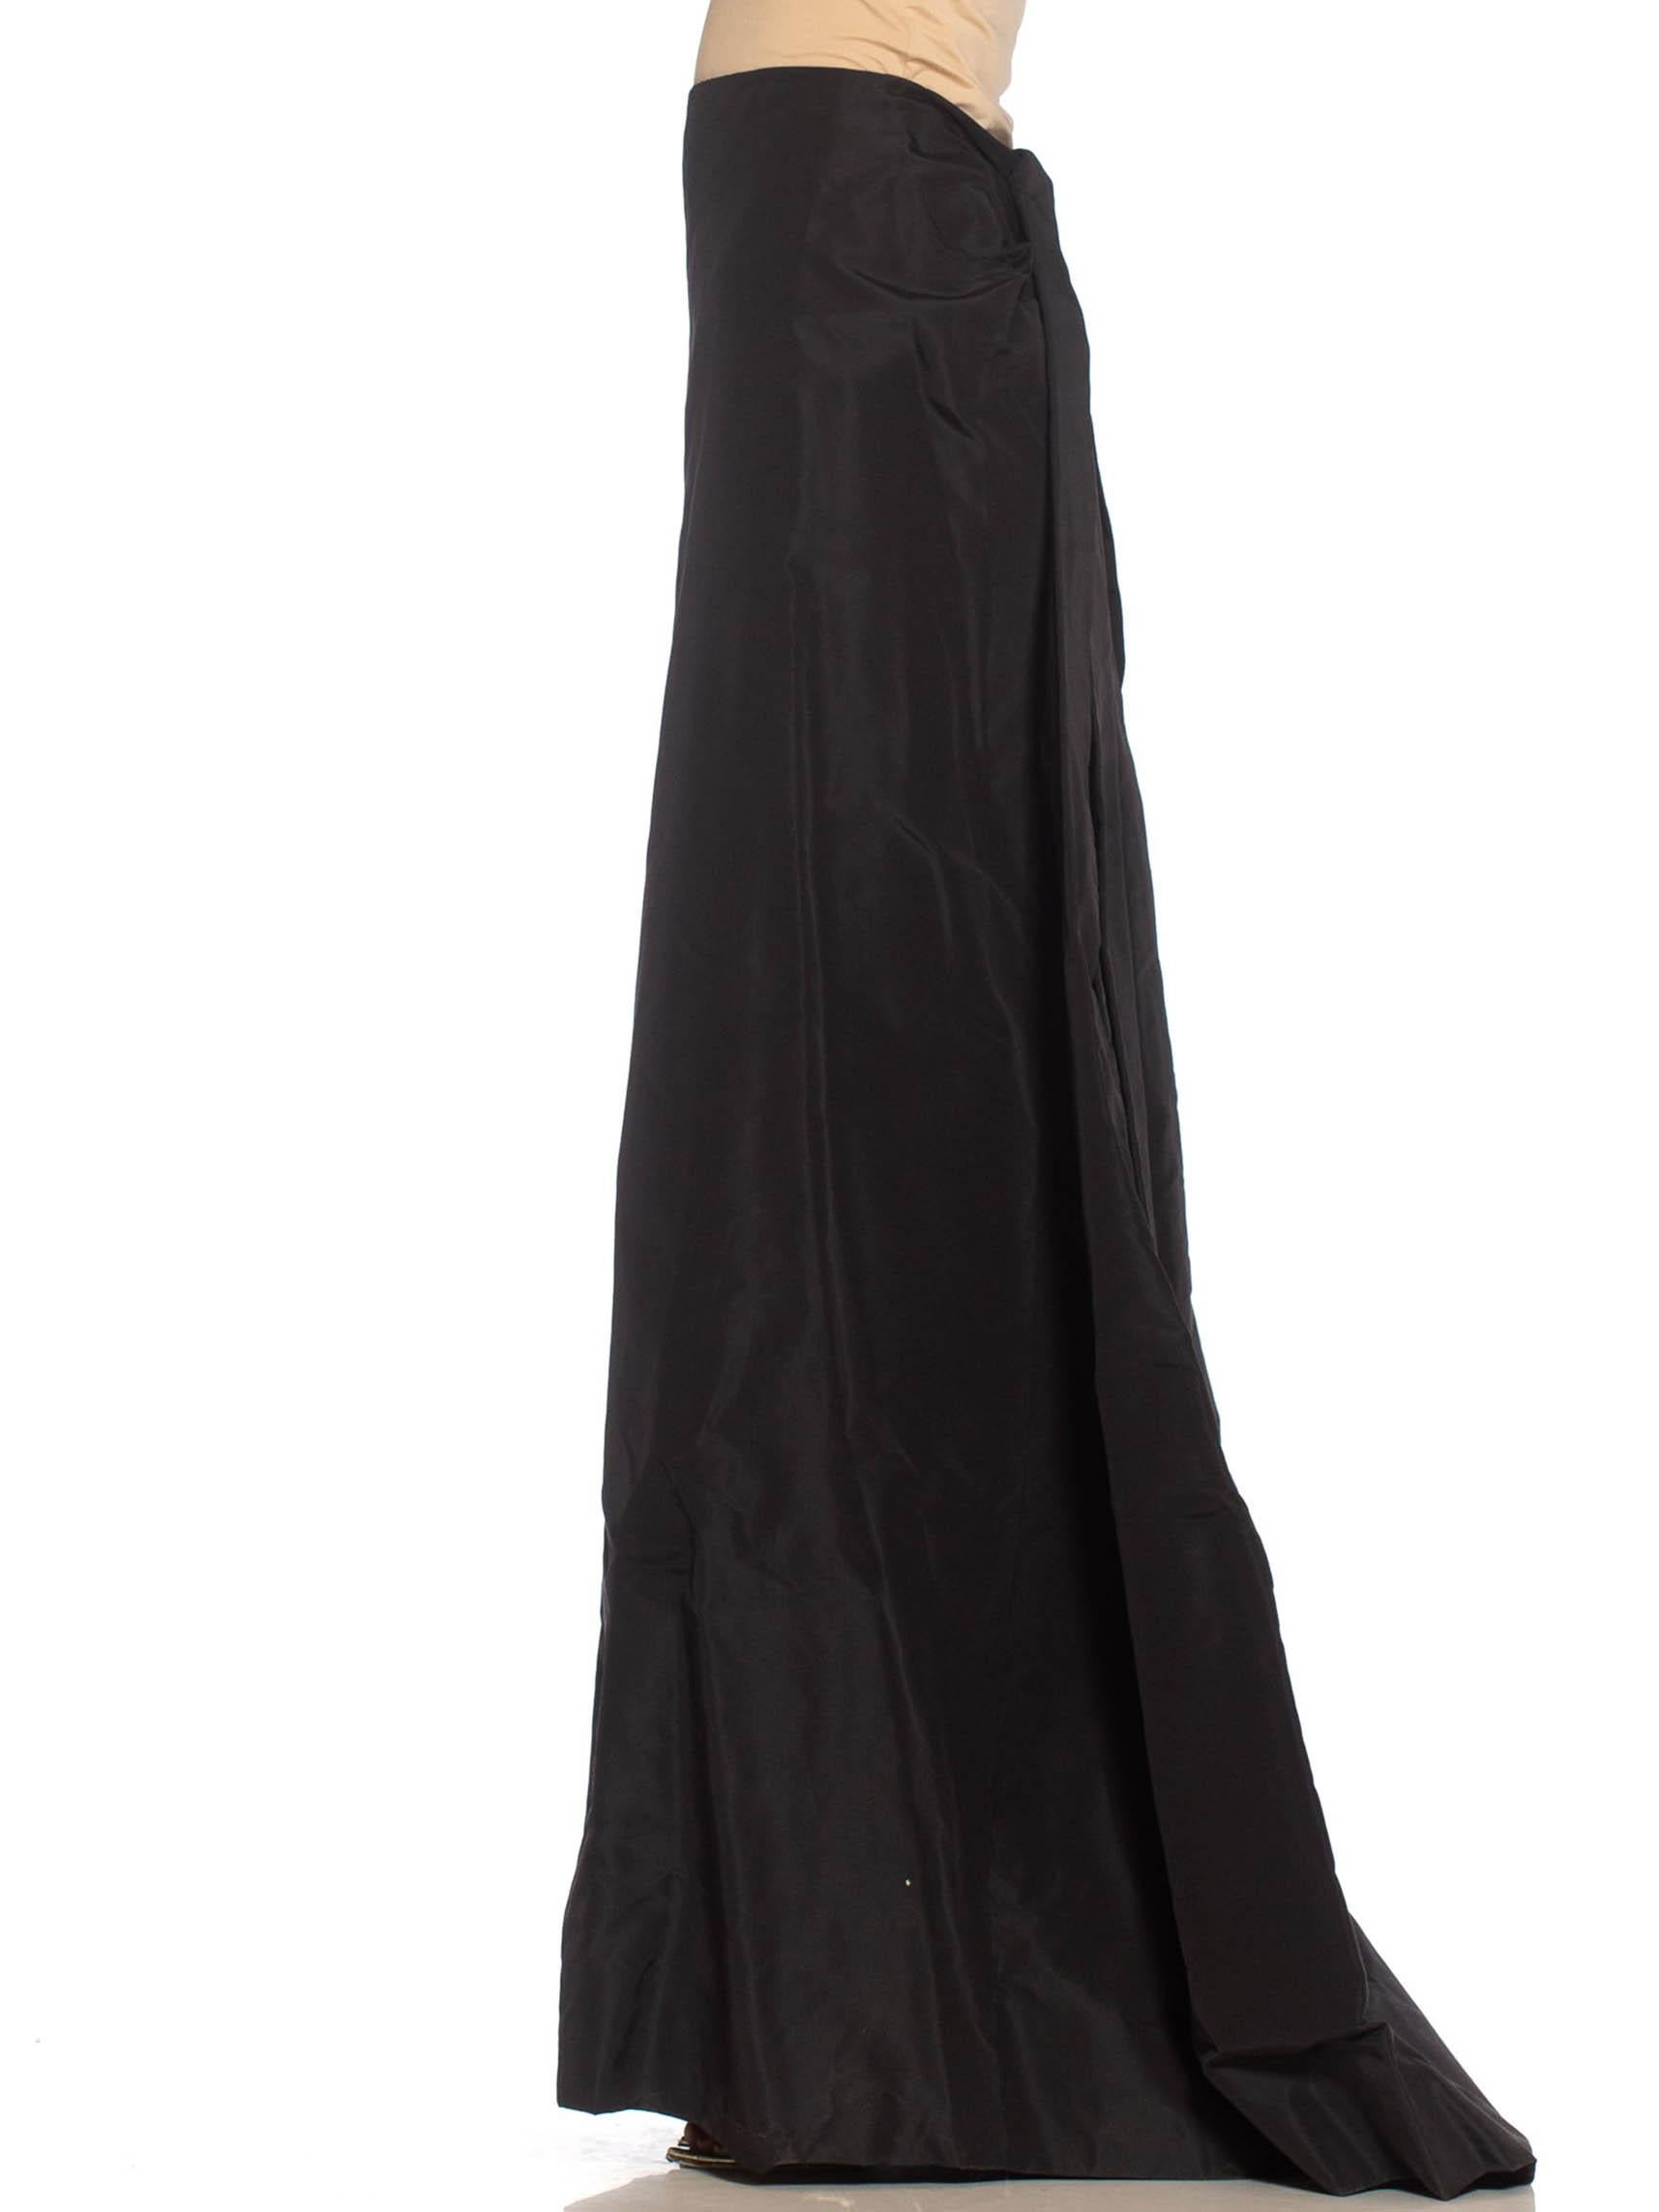 michael kors black skirt